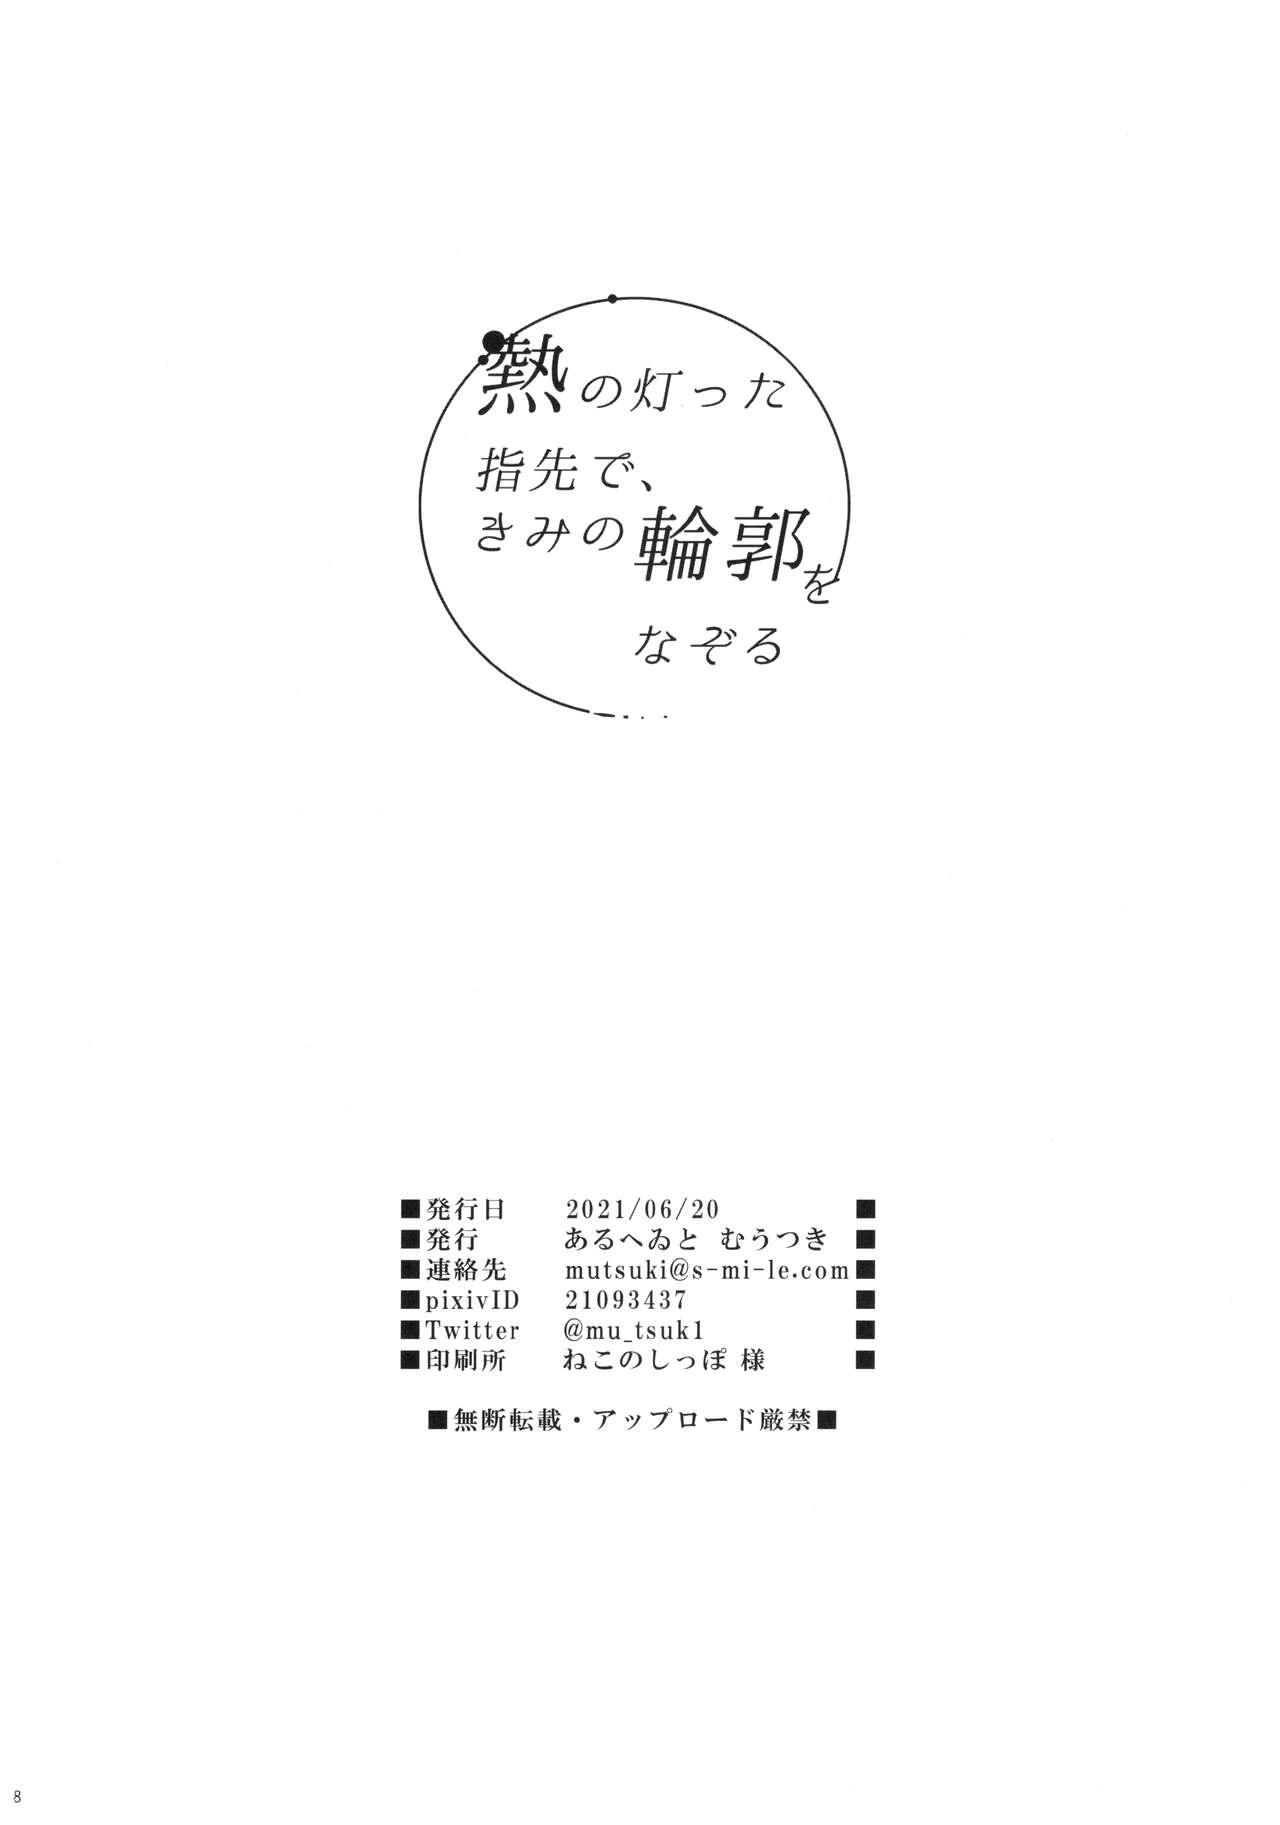 Married Netsu no Tomotta Yubisaki de, Kimi no Rinkaku o Nazoru - Fate grand order Camgirls - Page 27